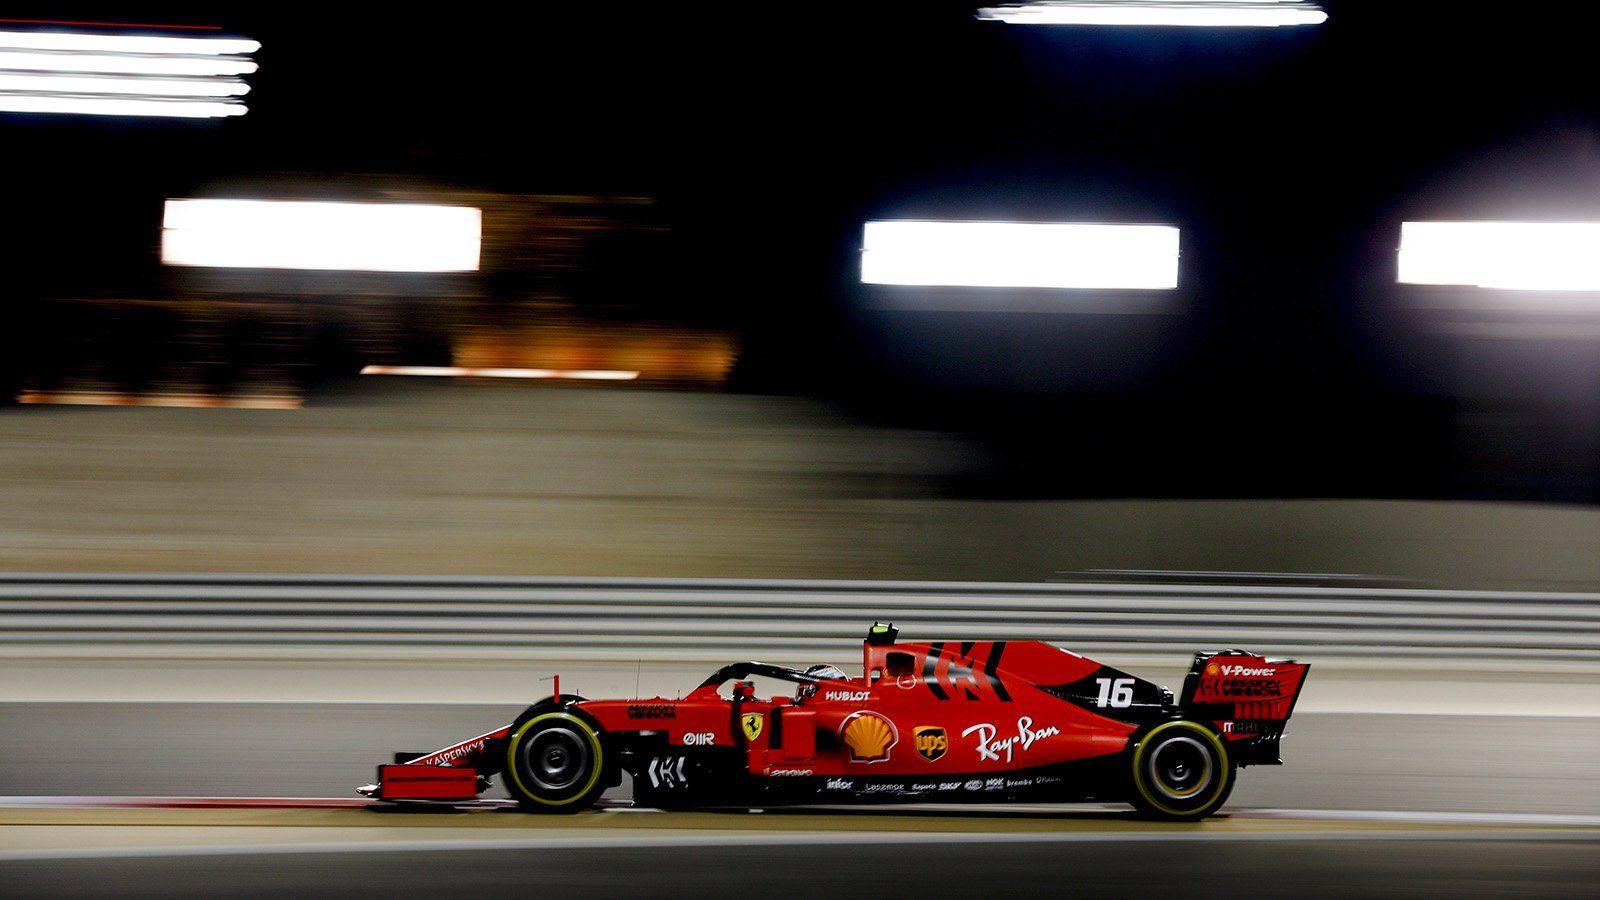 Wallpaper  Formula 1 Ferrari F1 Red Bull Racing Charles Leclerc car  1920x1080  AxelA  2103217  HD Wallpapers  WallHere